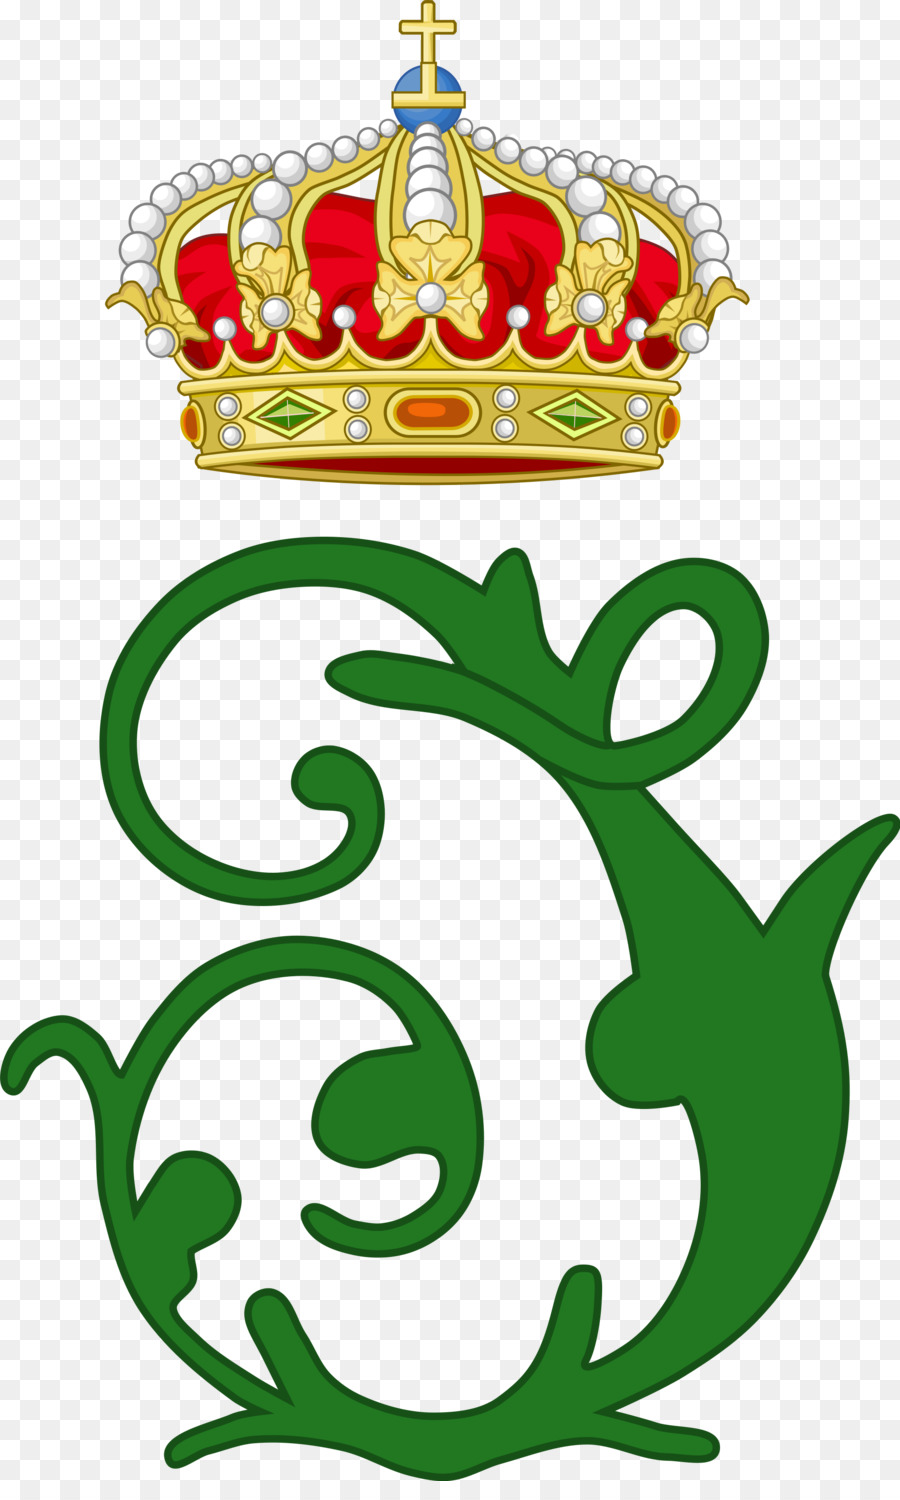 Royal Cypher Monarch Prince Britische Königsfamilie Anhalt-Bernburg - Sachsen